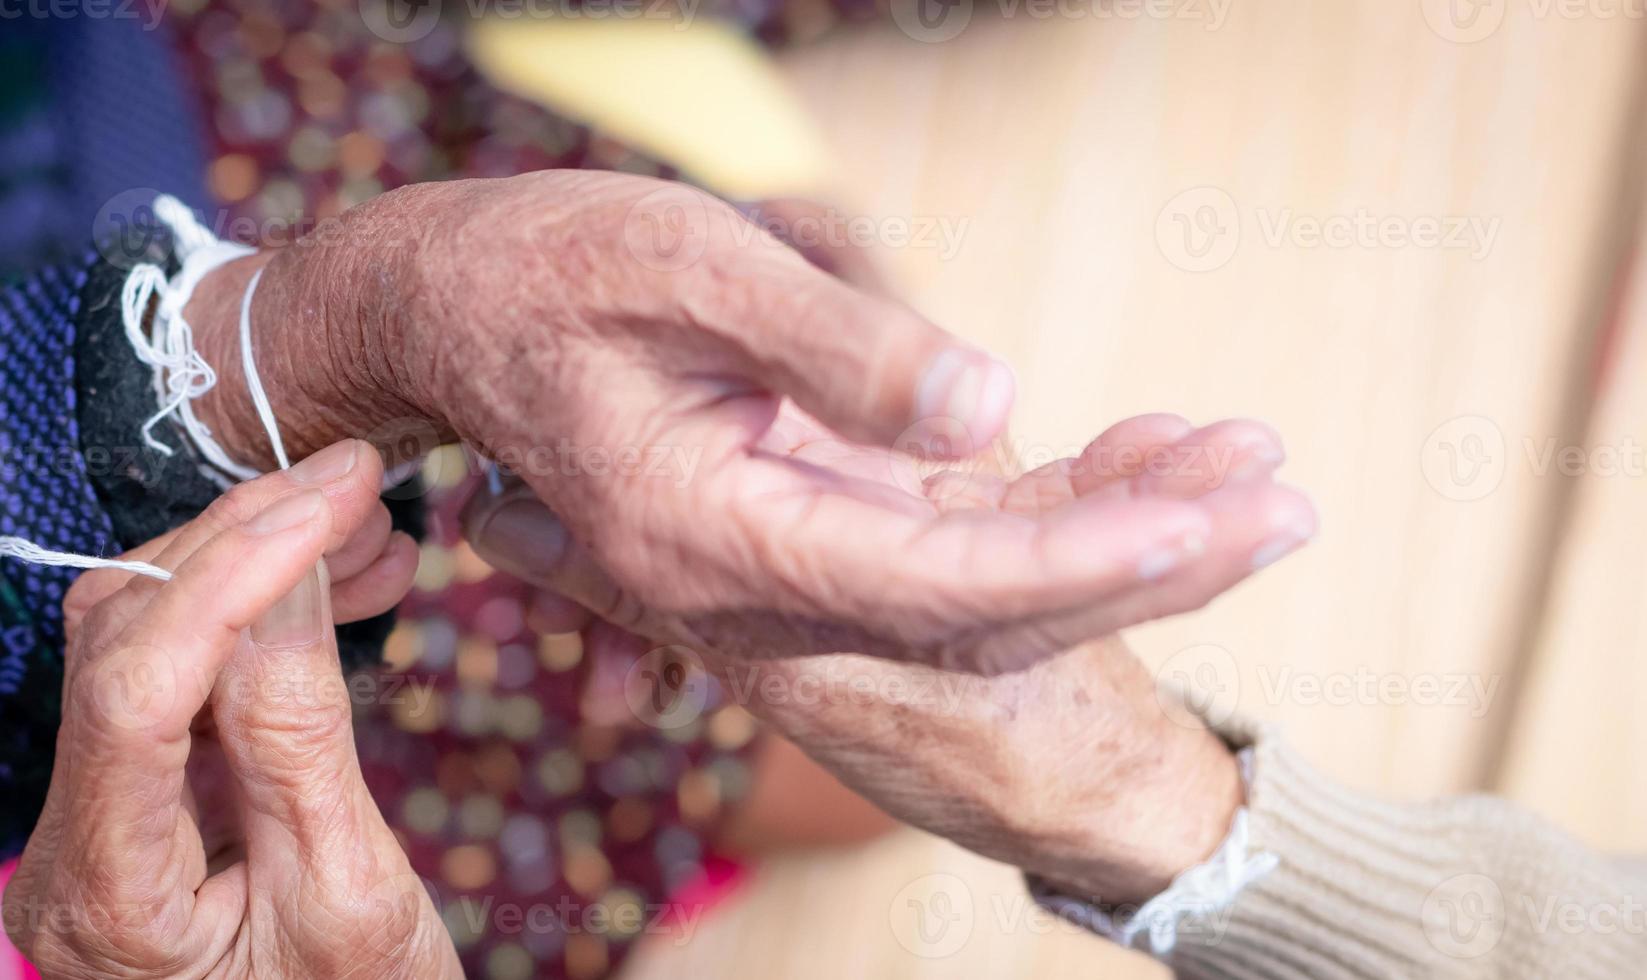 a cerimônia de amarrar o pulso dos idosos com o fio sagrado para consolar o kwan dos idosos. cultura tailandesa. crenças e cultura local do povo nordestino tailandês. sociedade envelhecida no sudeste asiático. foto